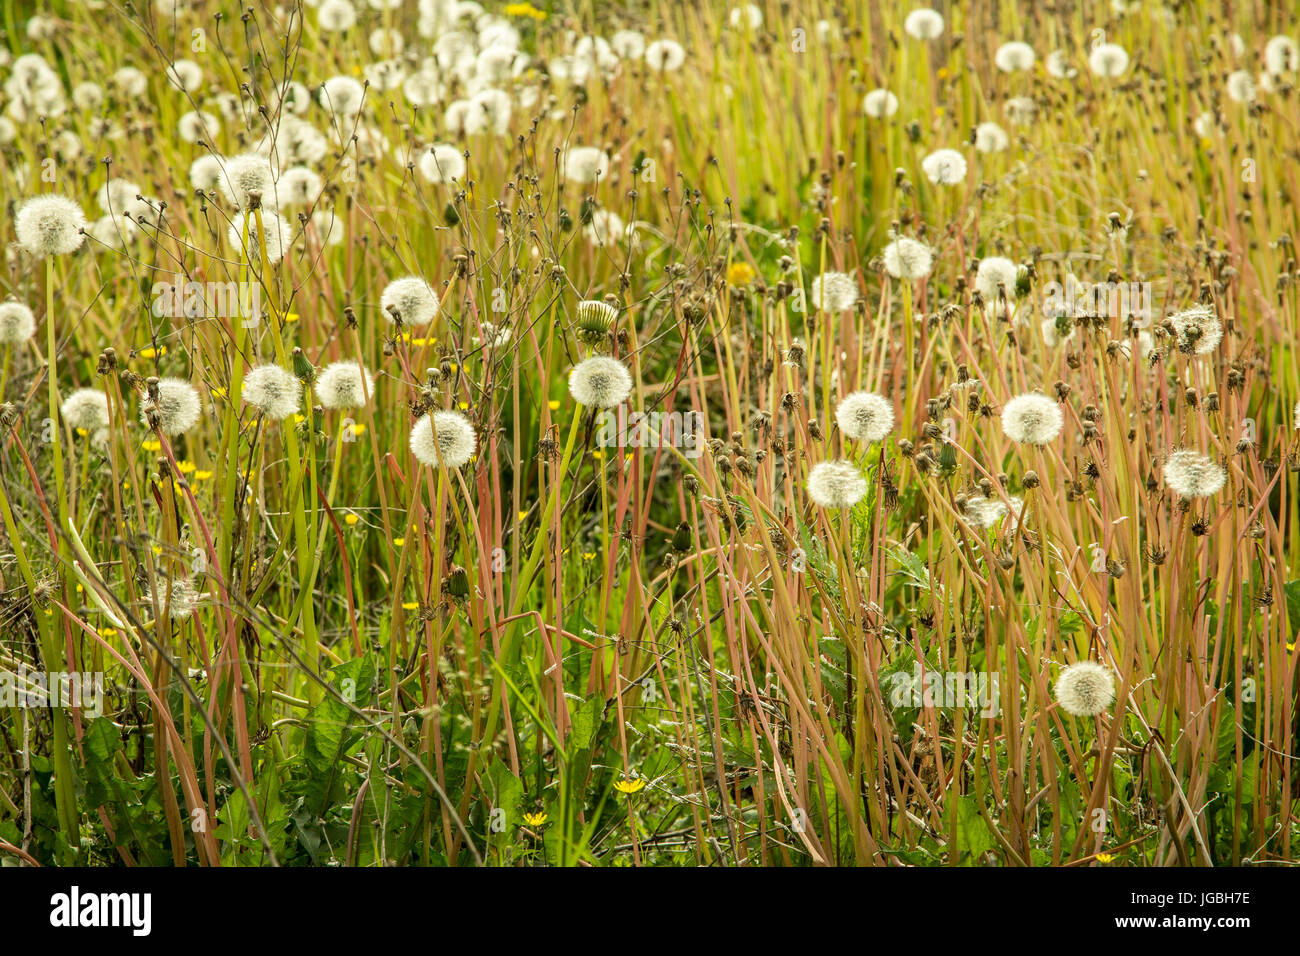 Dandelions seeding Stock Photo